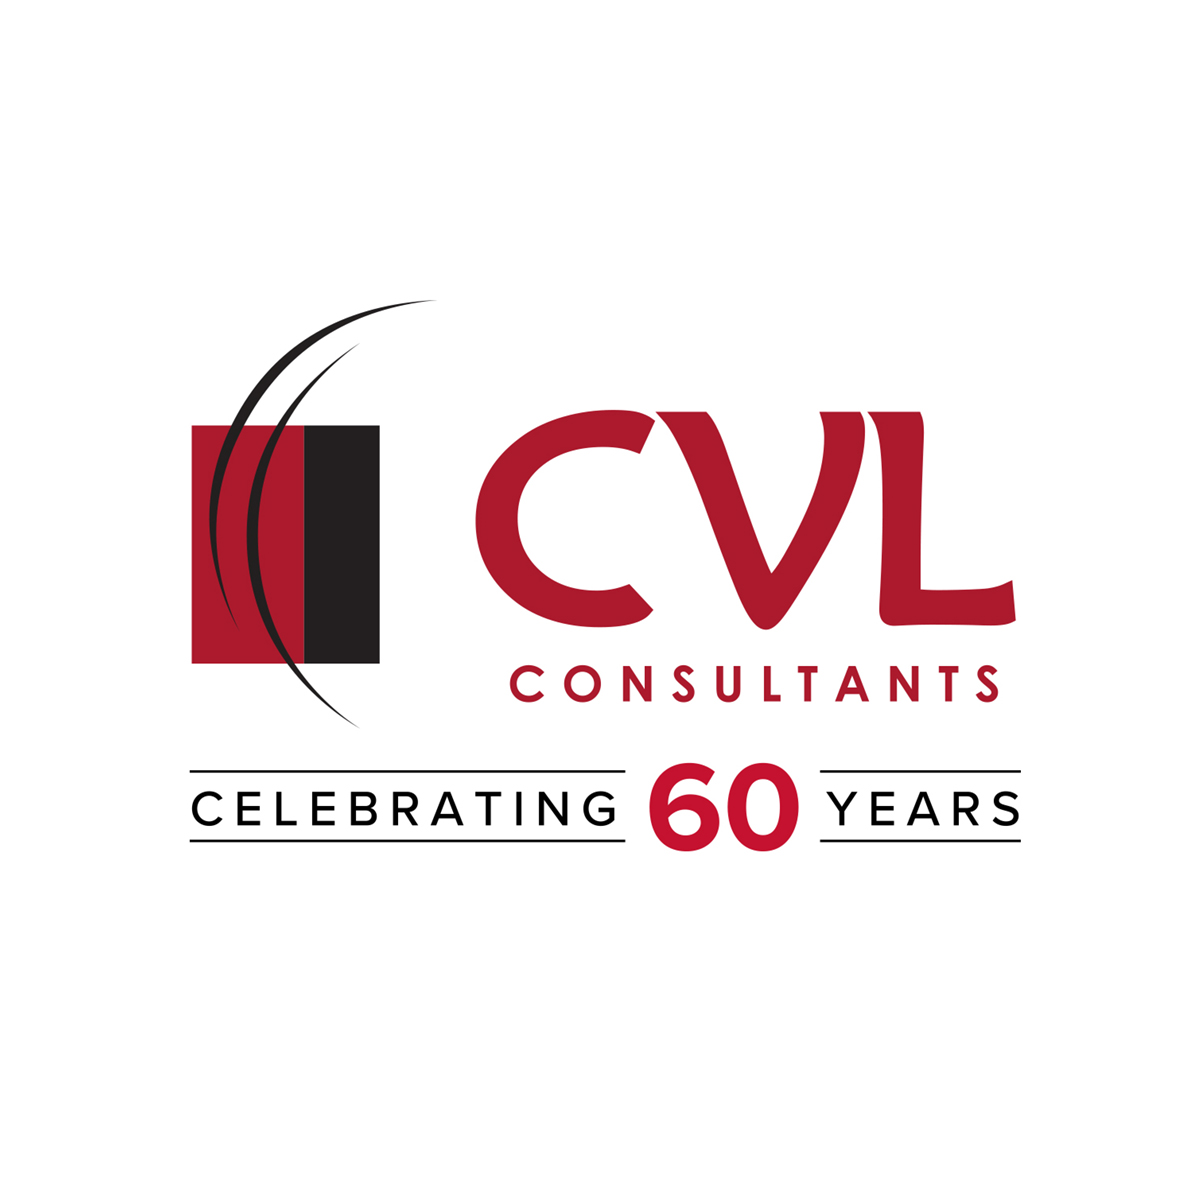 CVL Consultants logo.jpg